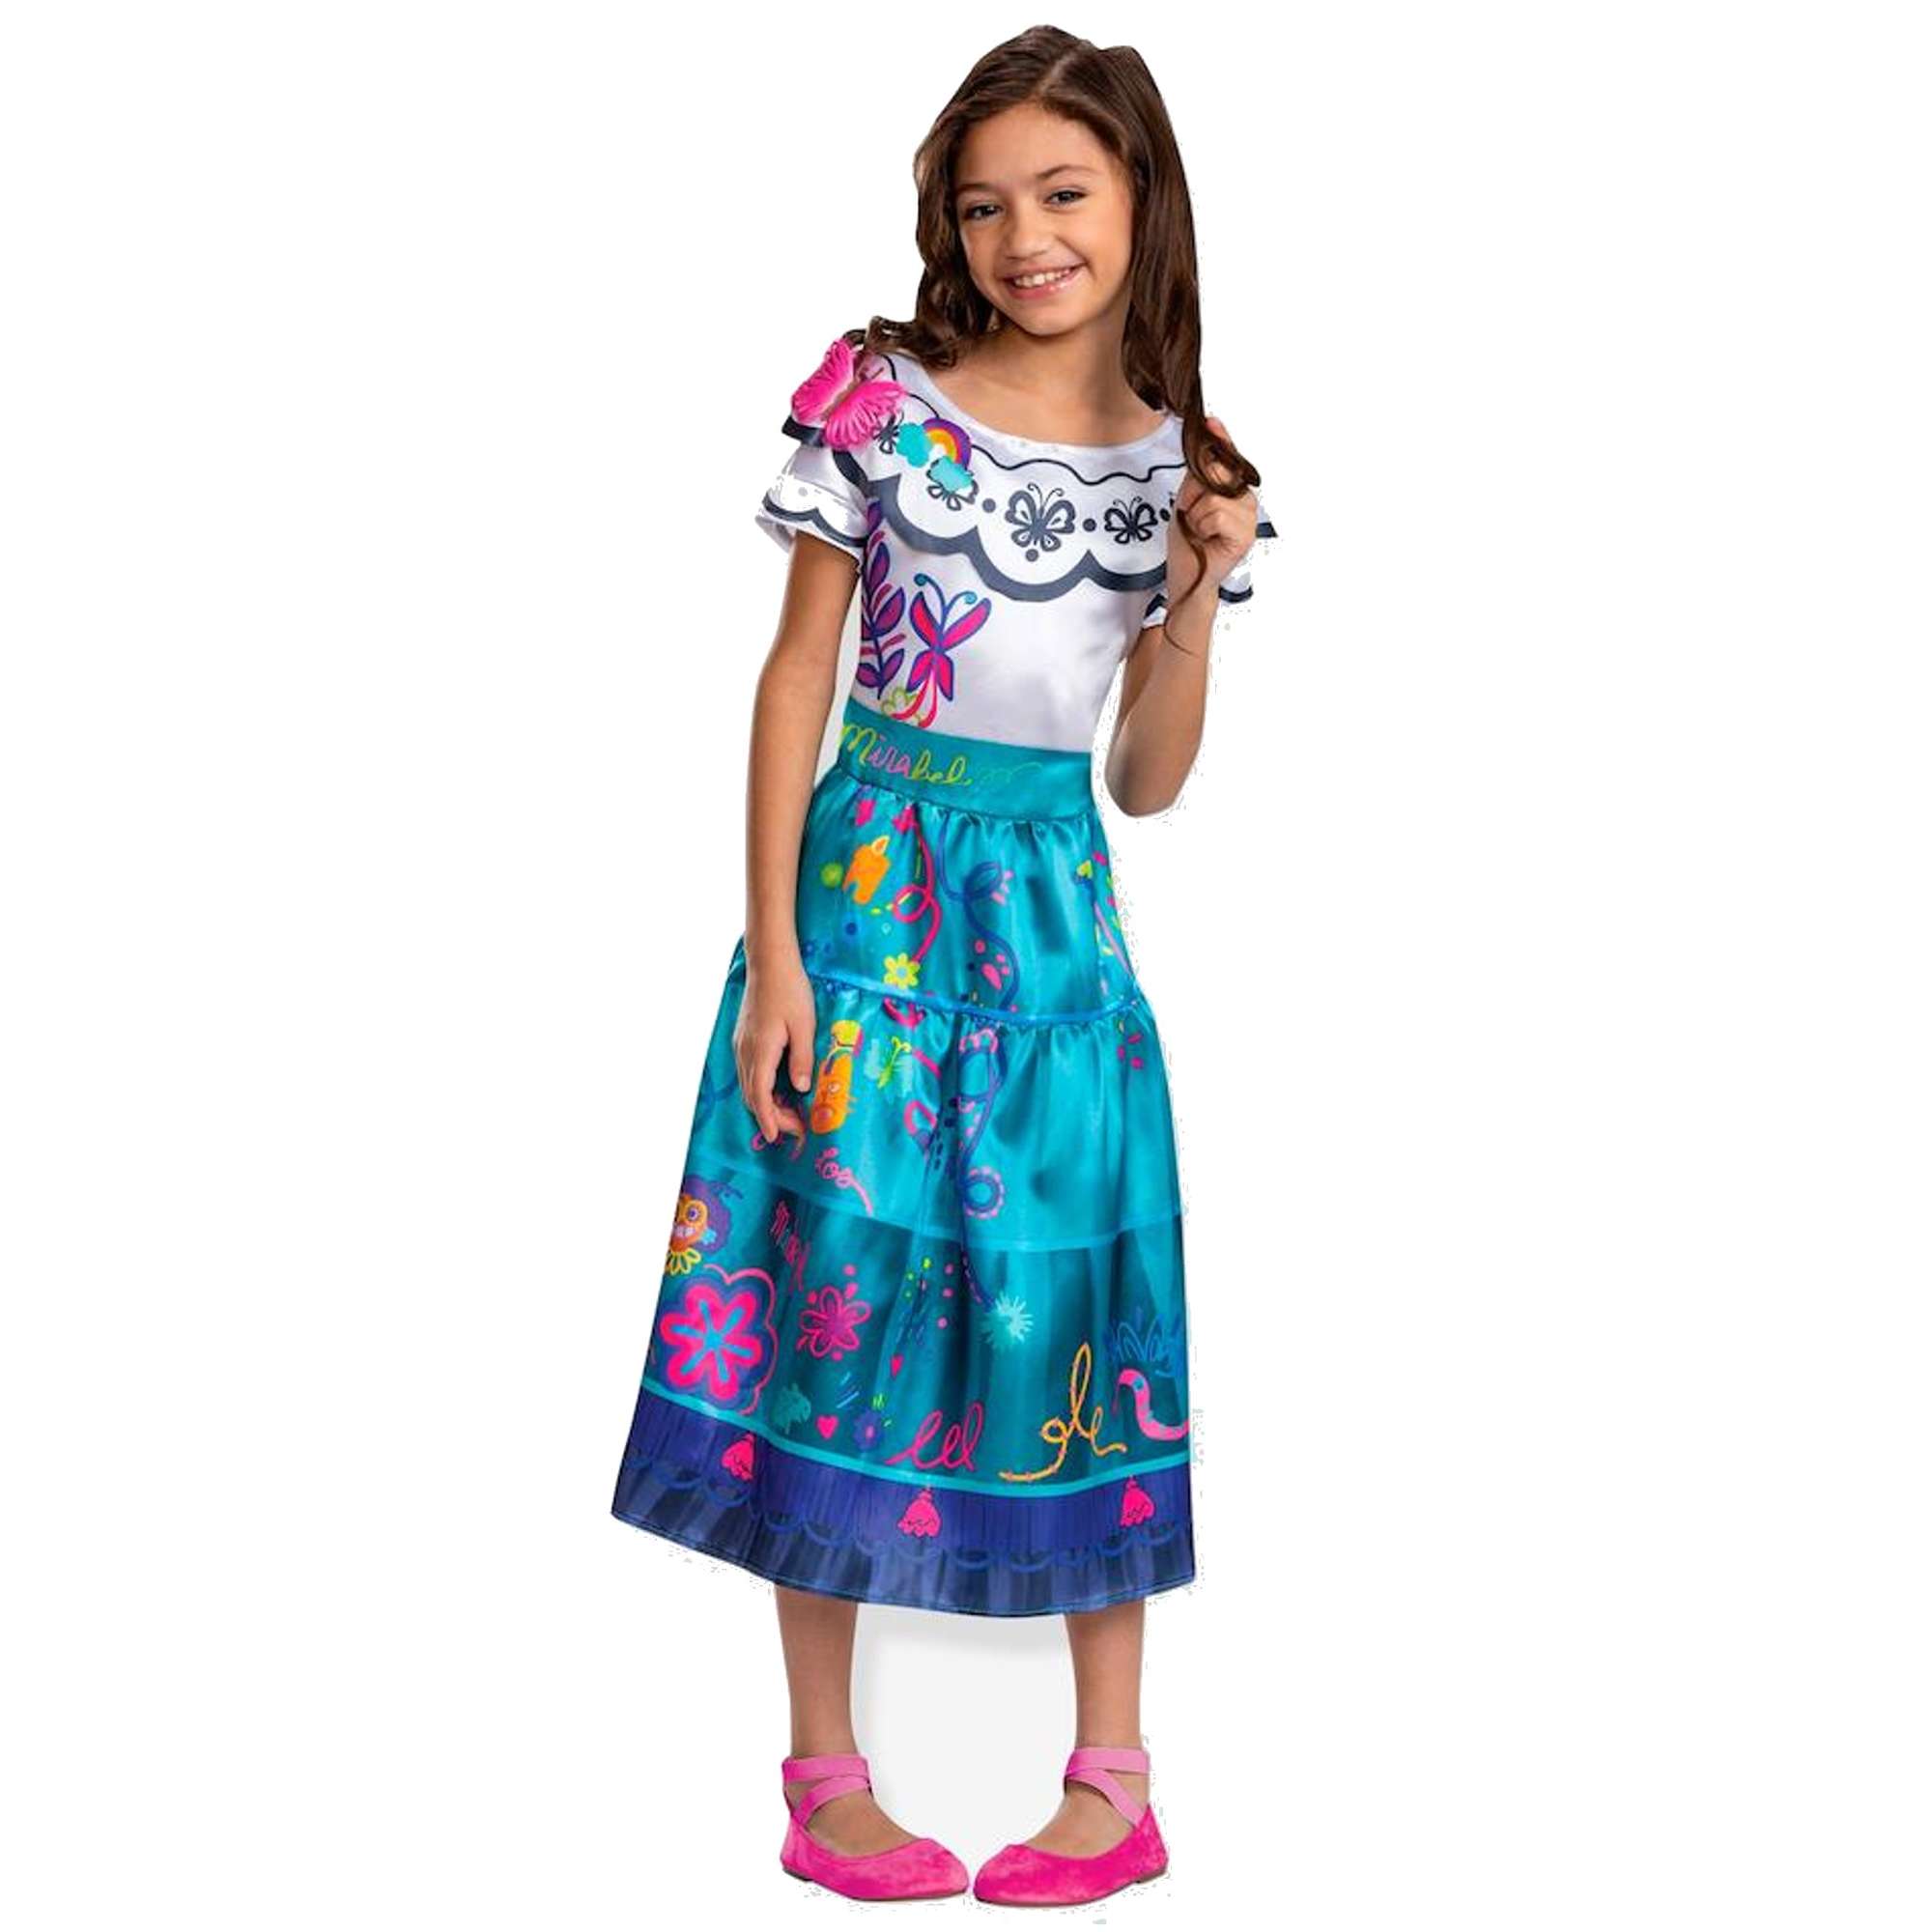 Strj karnawaowy Disney dla dziewczynki Encanto Mirabel kostium przebranie 125-135 cm (7-8 lat)